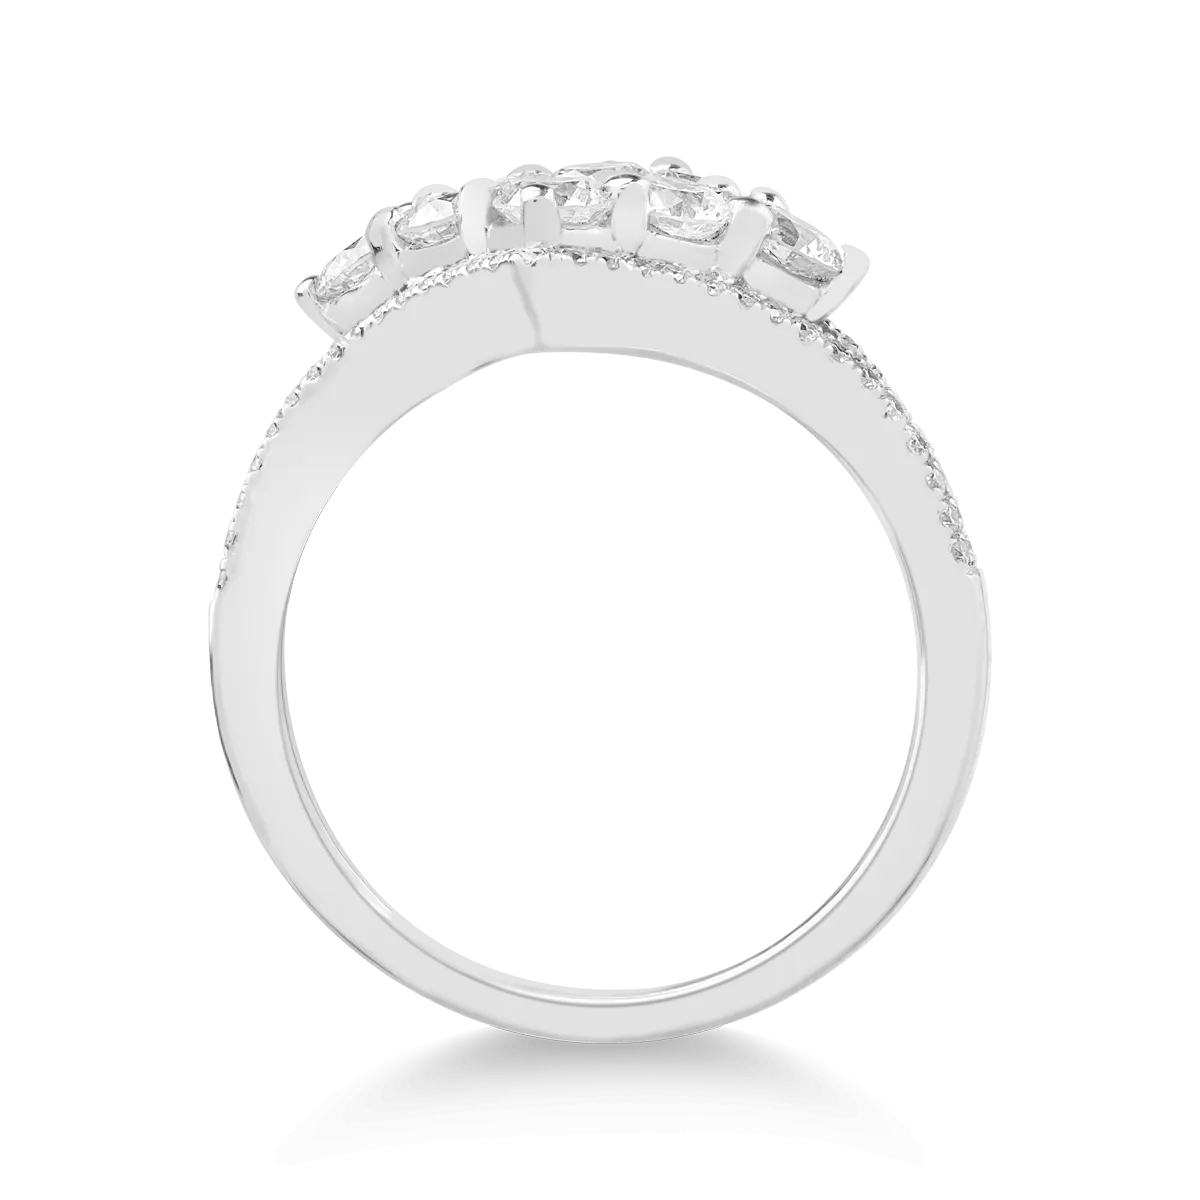 18k fehér arany gyűrű 1.6ct gyémántokkal